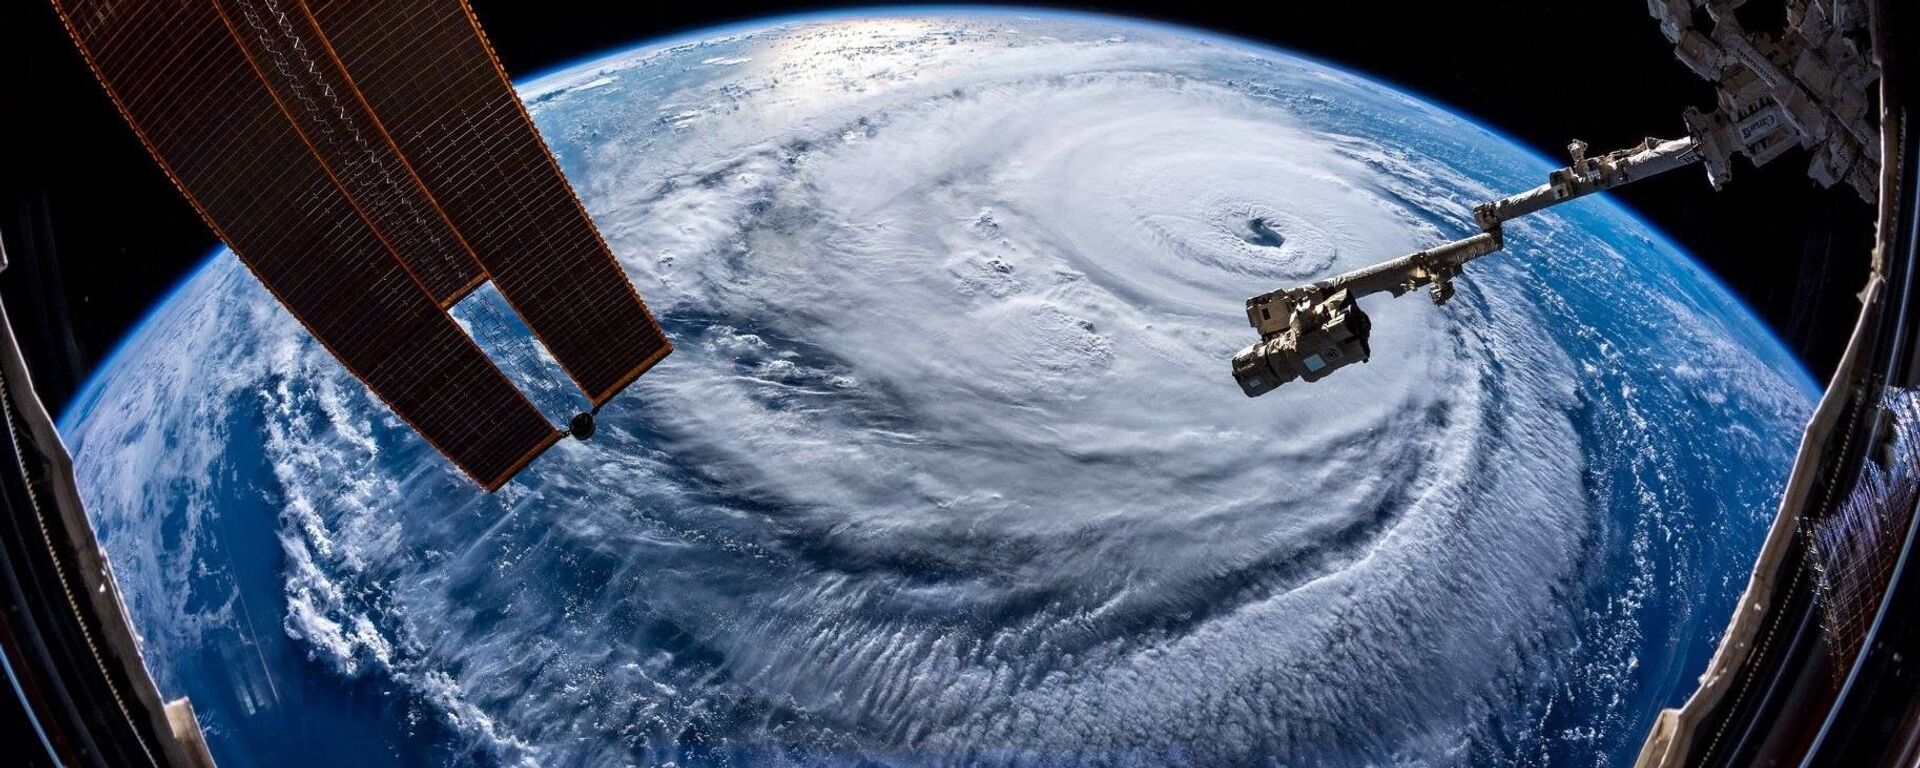 Ураган Флоренс, сфотографированный астронавтом Александром Герстом с МКС - Sputnik Литва, 1920, 15.05.2021